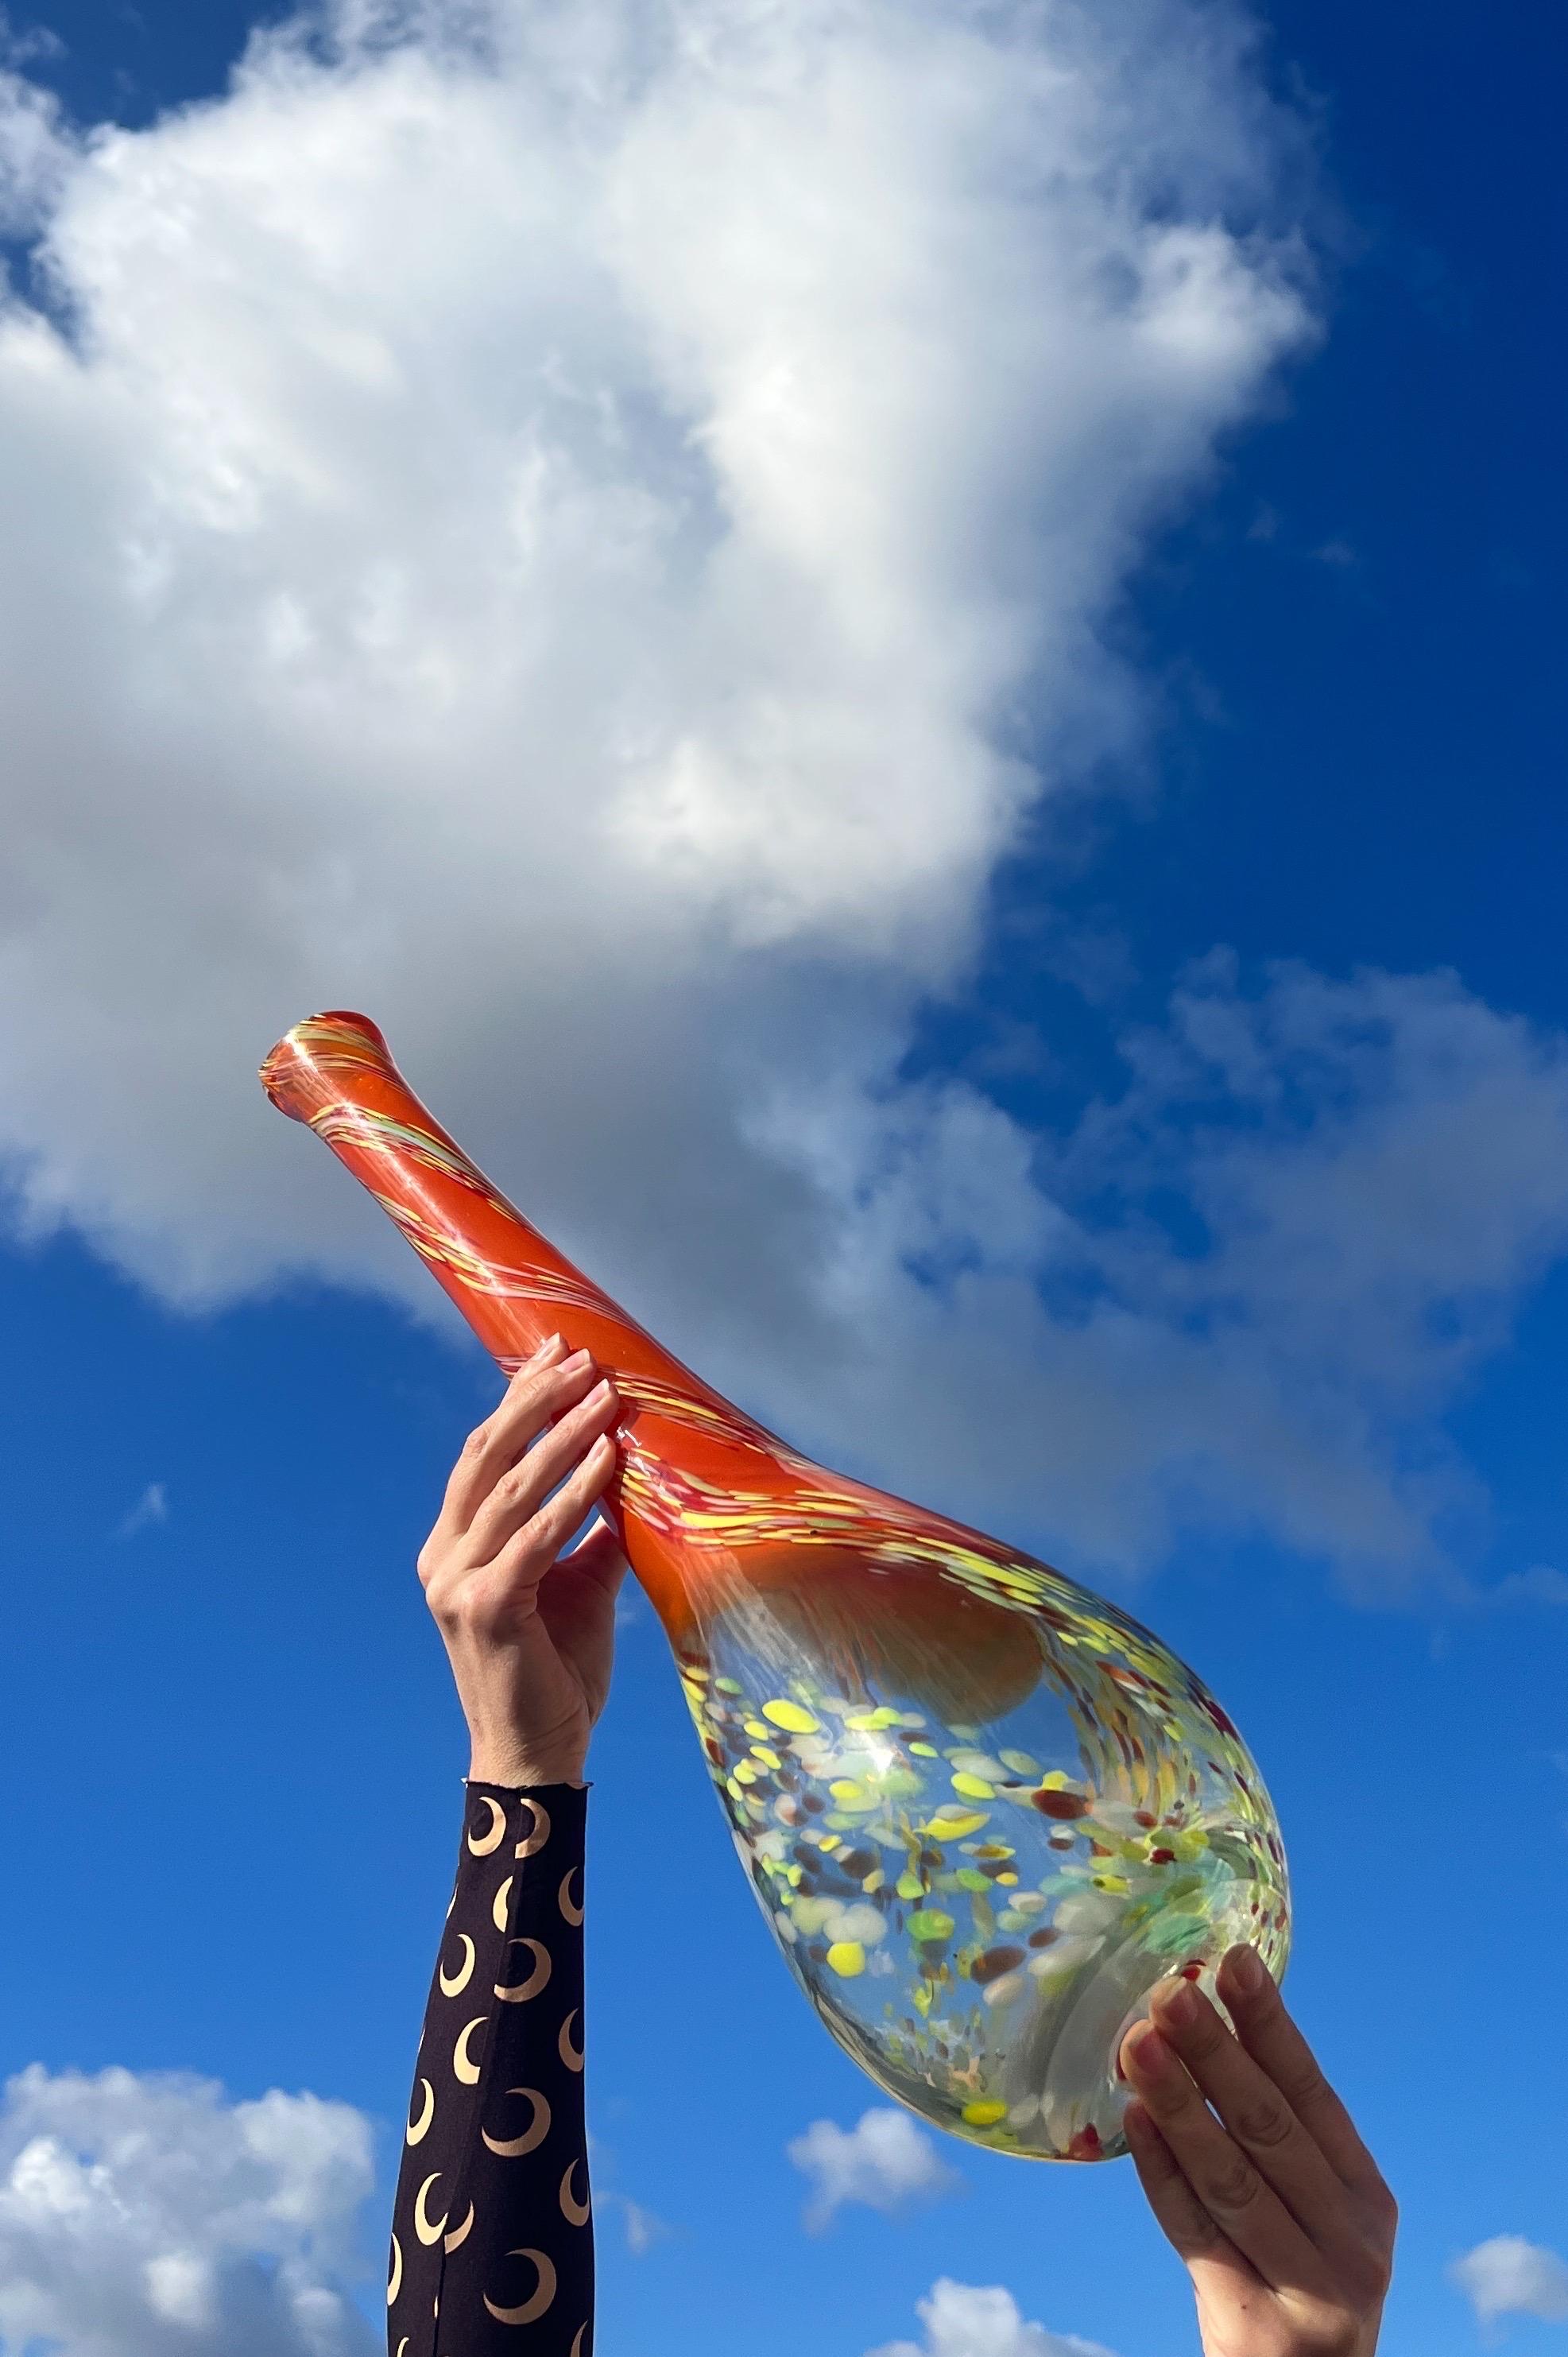 Wir präsentieren eine atemberaubende Vase aus Murano-Glas, die direkt aus der pulsierenden Ära der 1970er Jahre stammt! Dieses exquisite Stück hat eine erstaunliche Verschmelzung von Farben. 

Am Sockel bildet transparentes Glas mit lebhaften